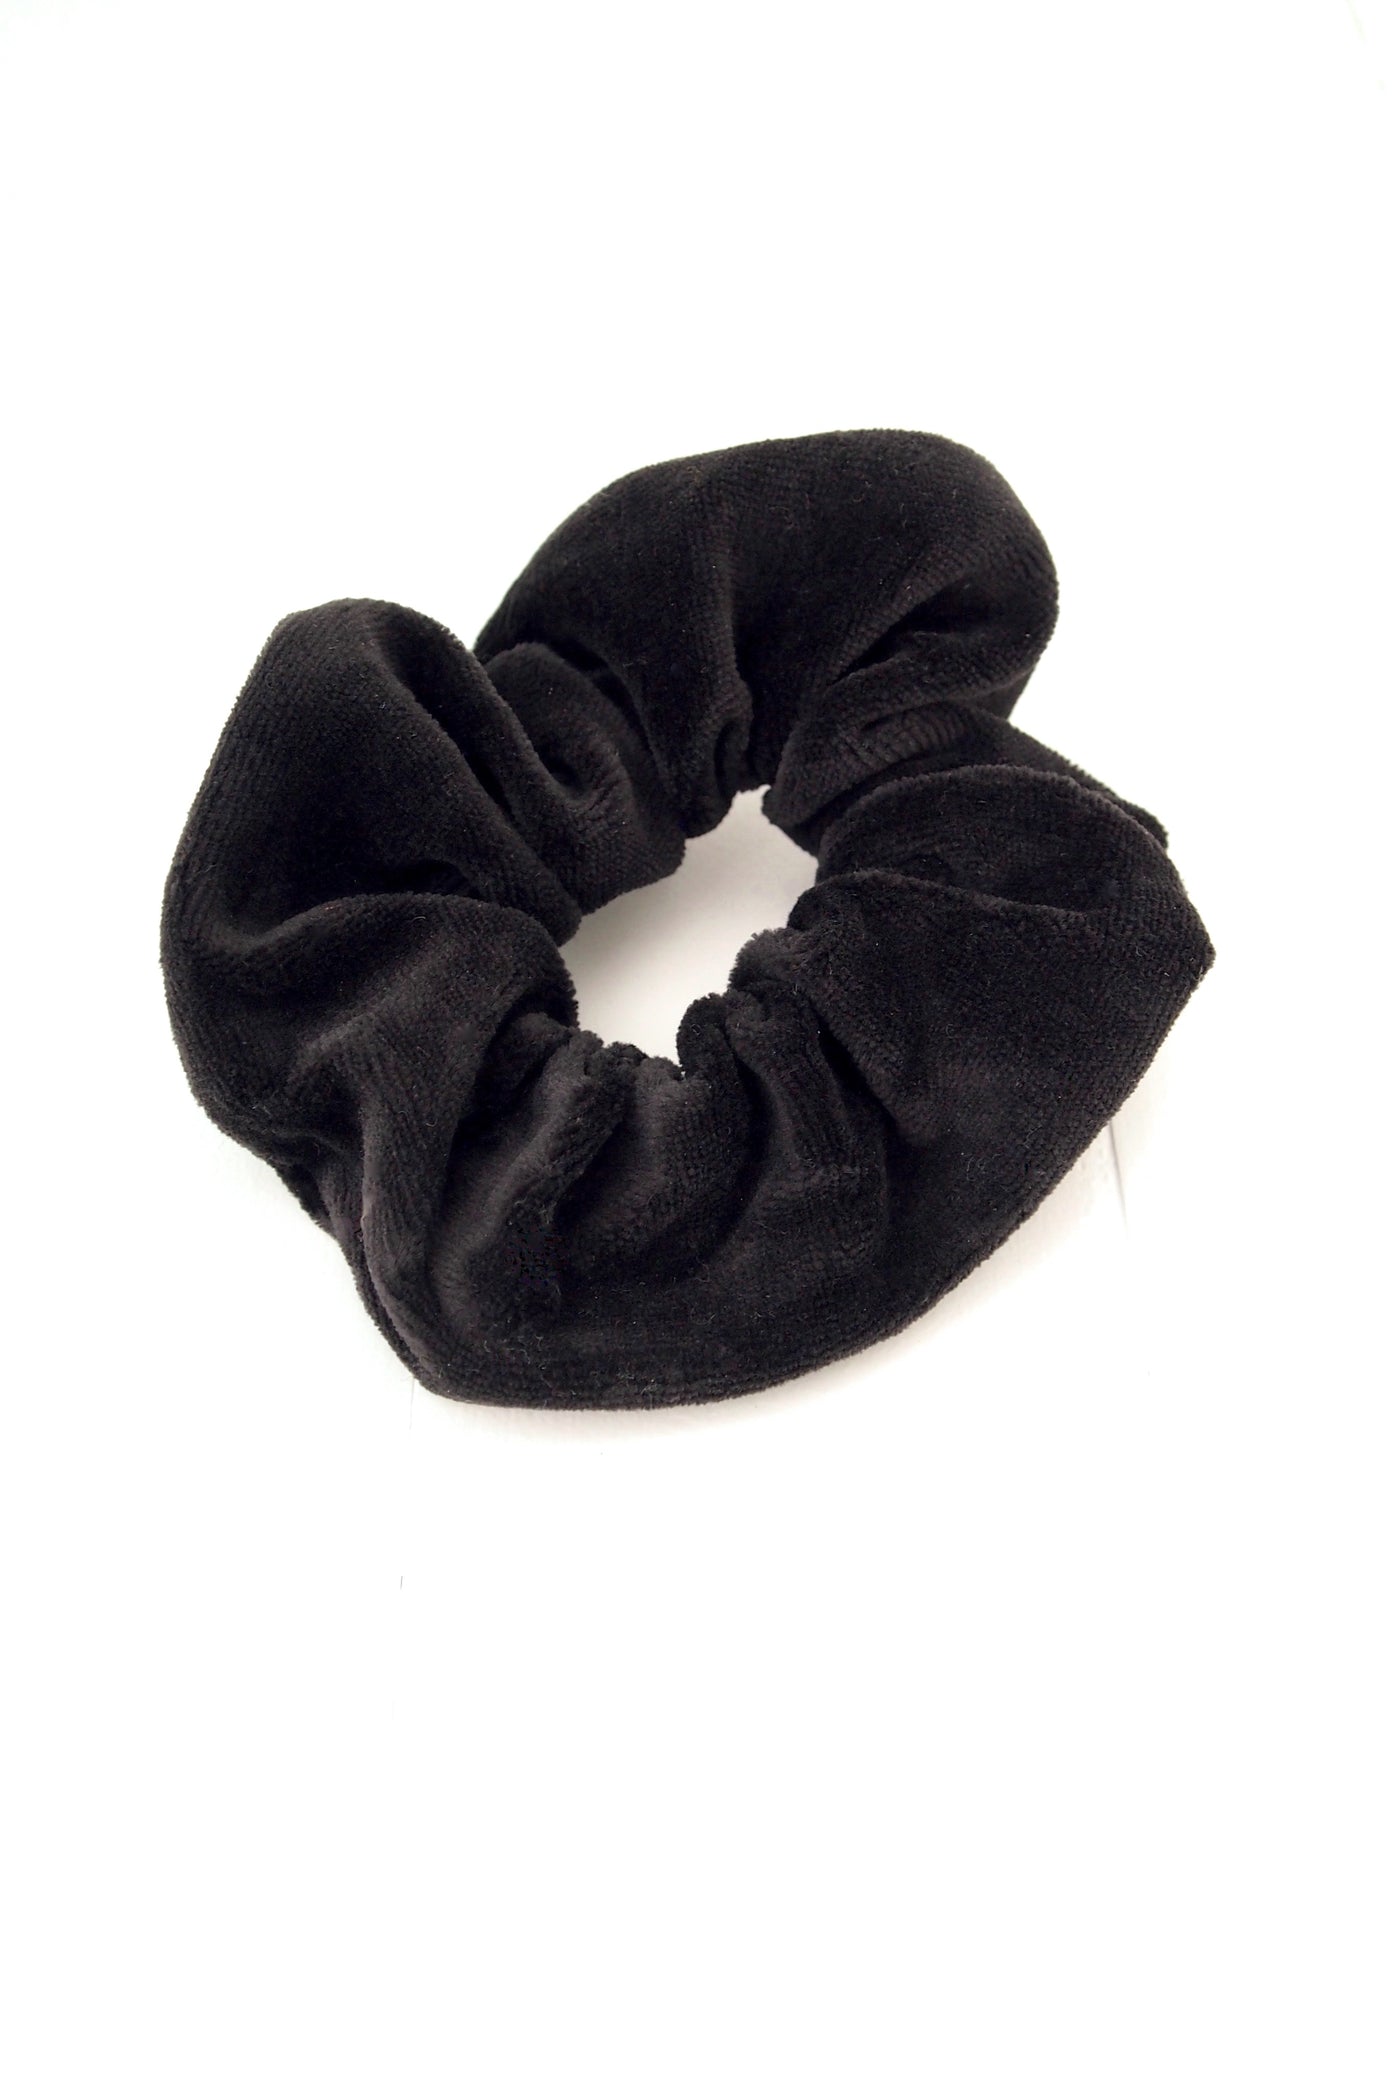 Scrunchie - Black Velvet